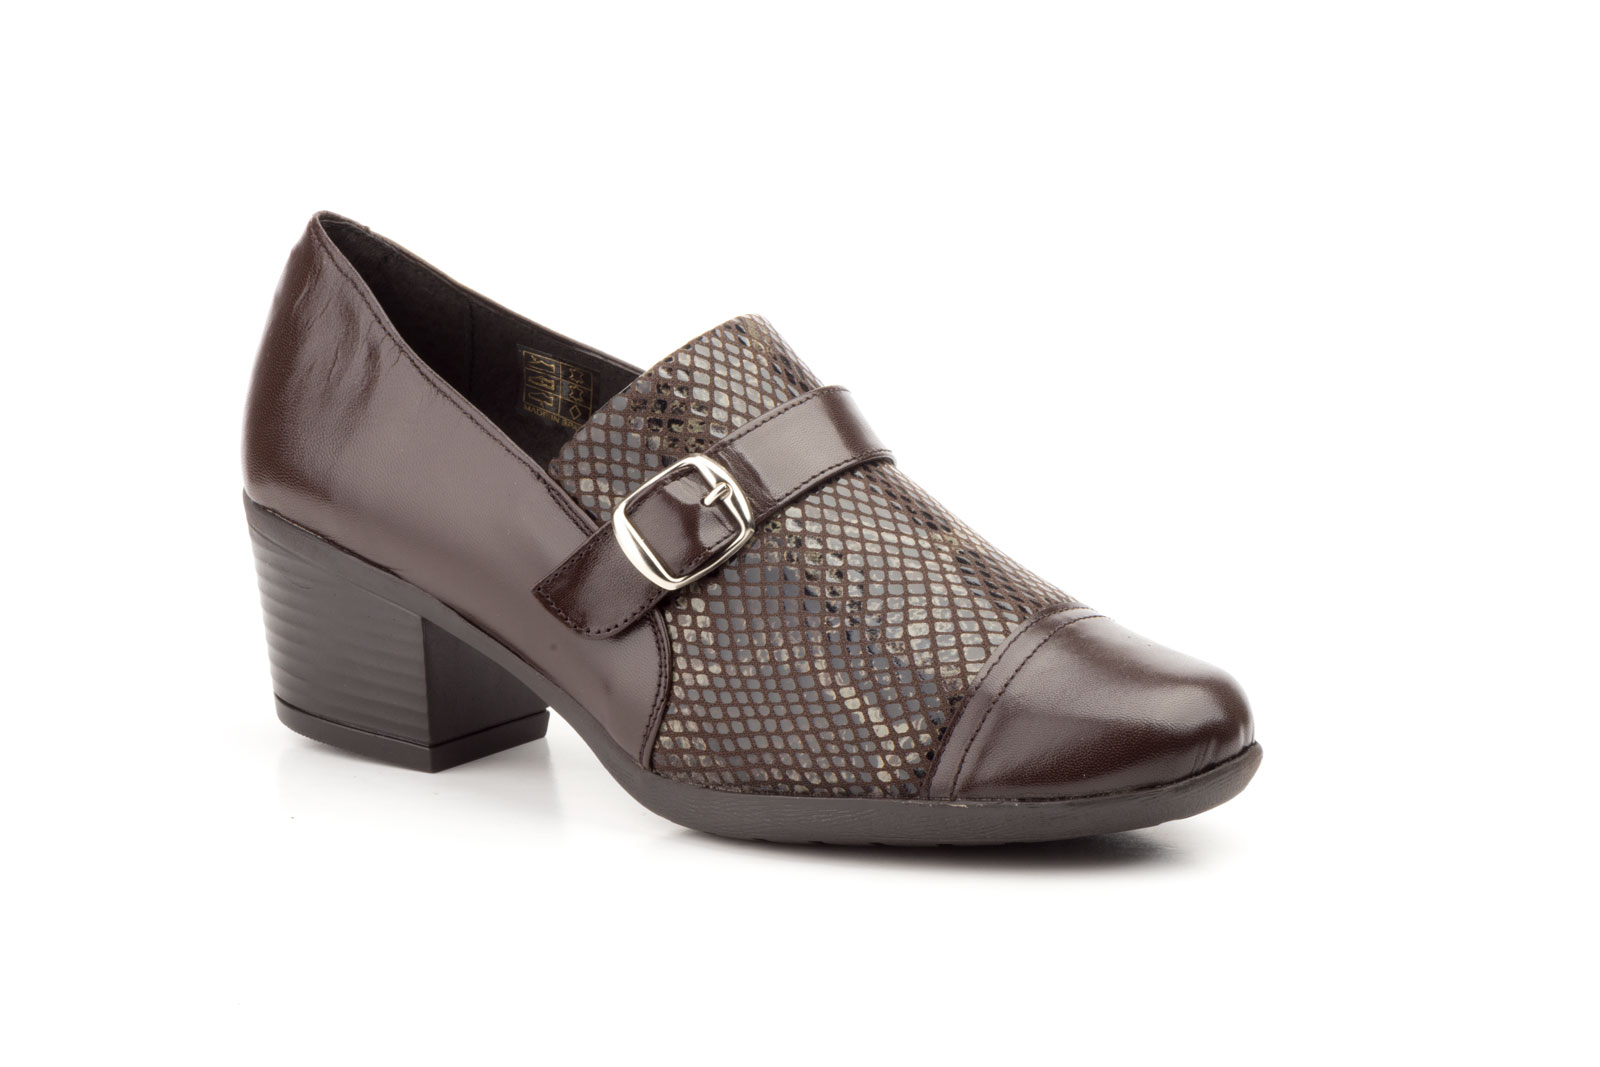 Zapatos Mujer Piel Marrón Lycra Hebilla  -  Ref. 5400 Marrón